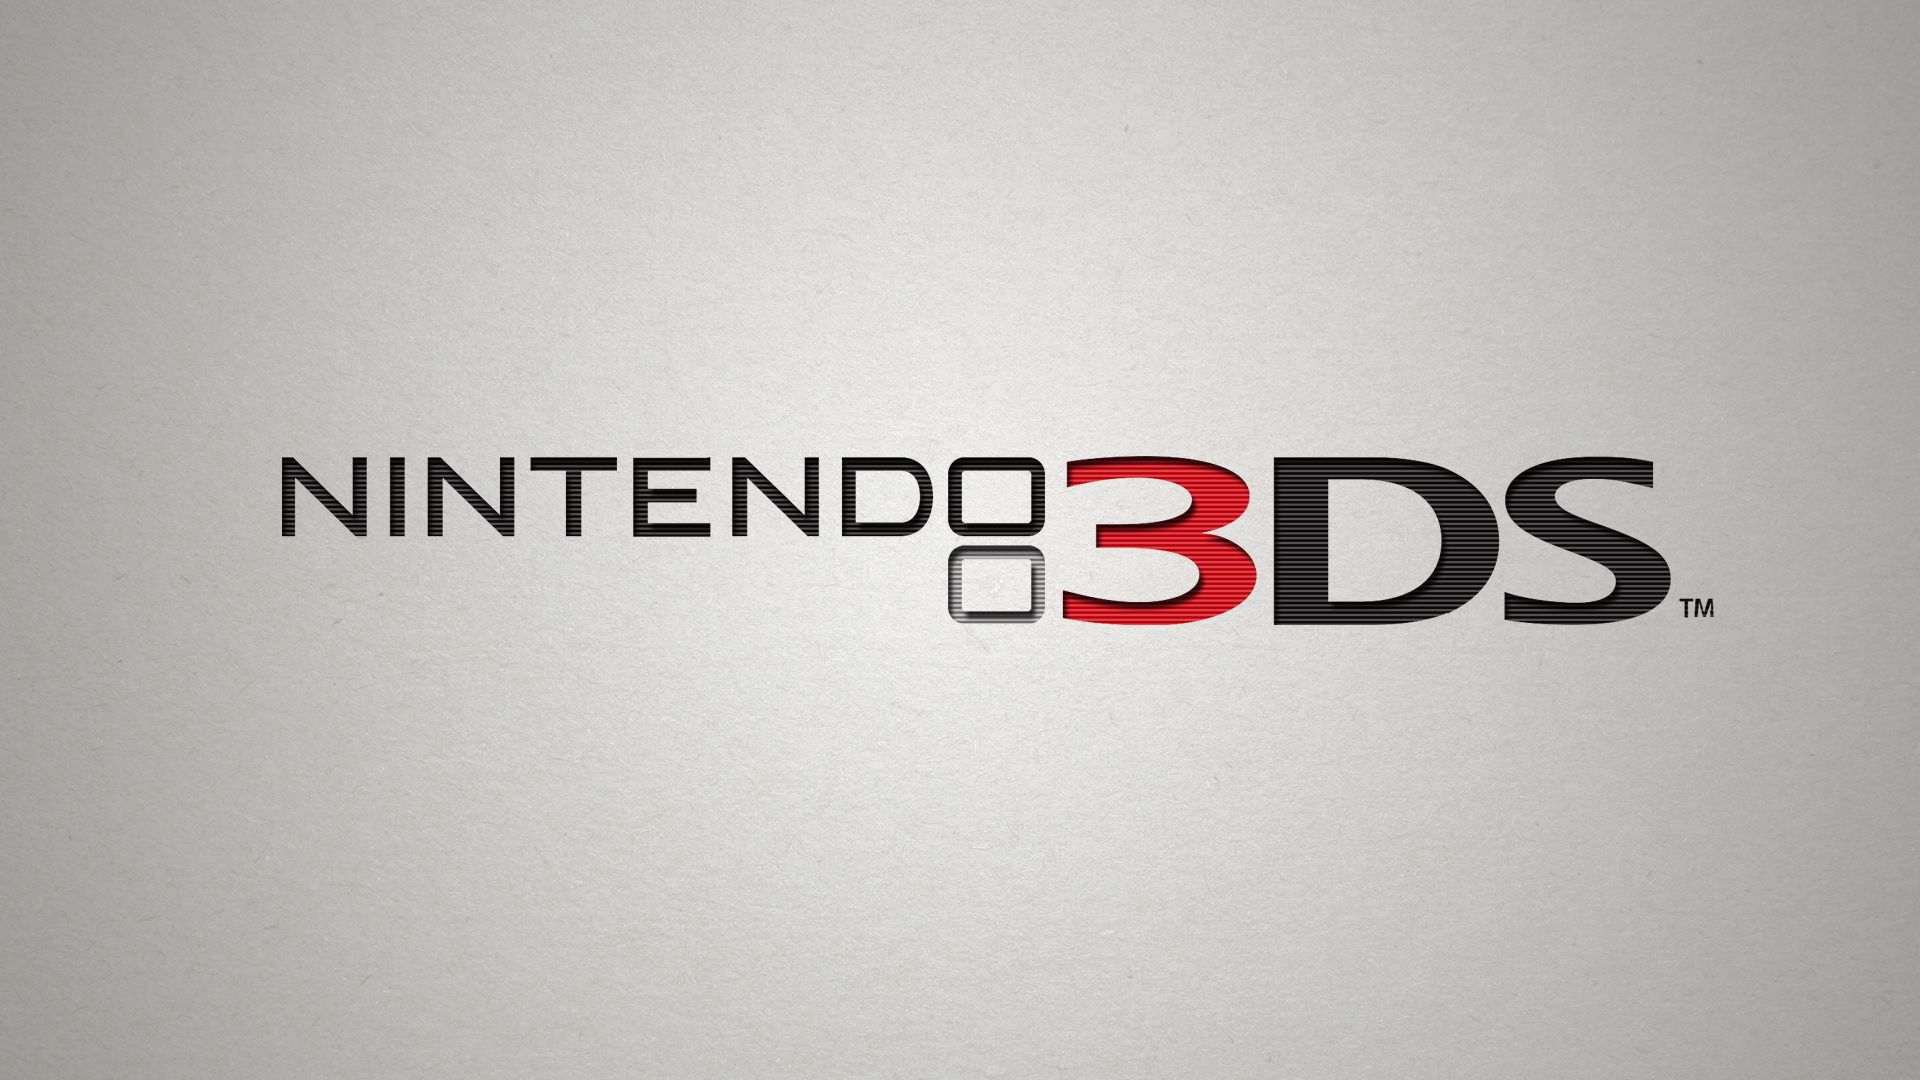 Descargar fondos de escritorio de Nintendo 3Ds HD